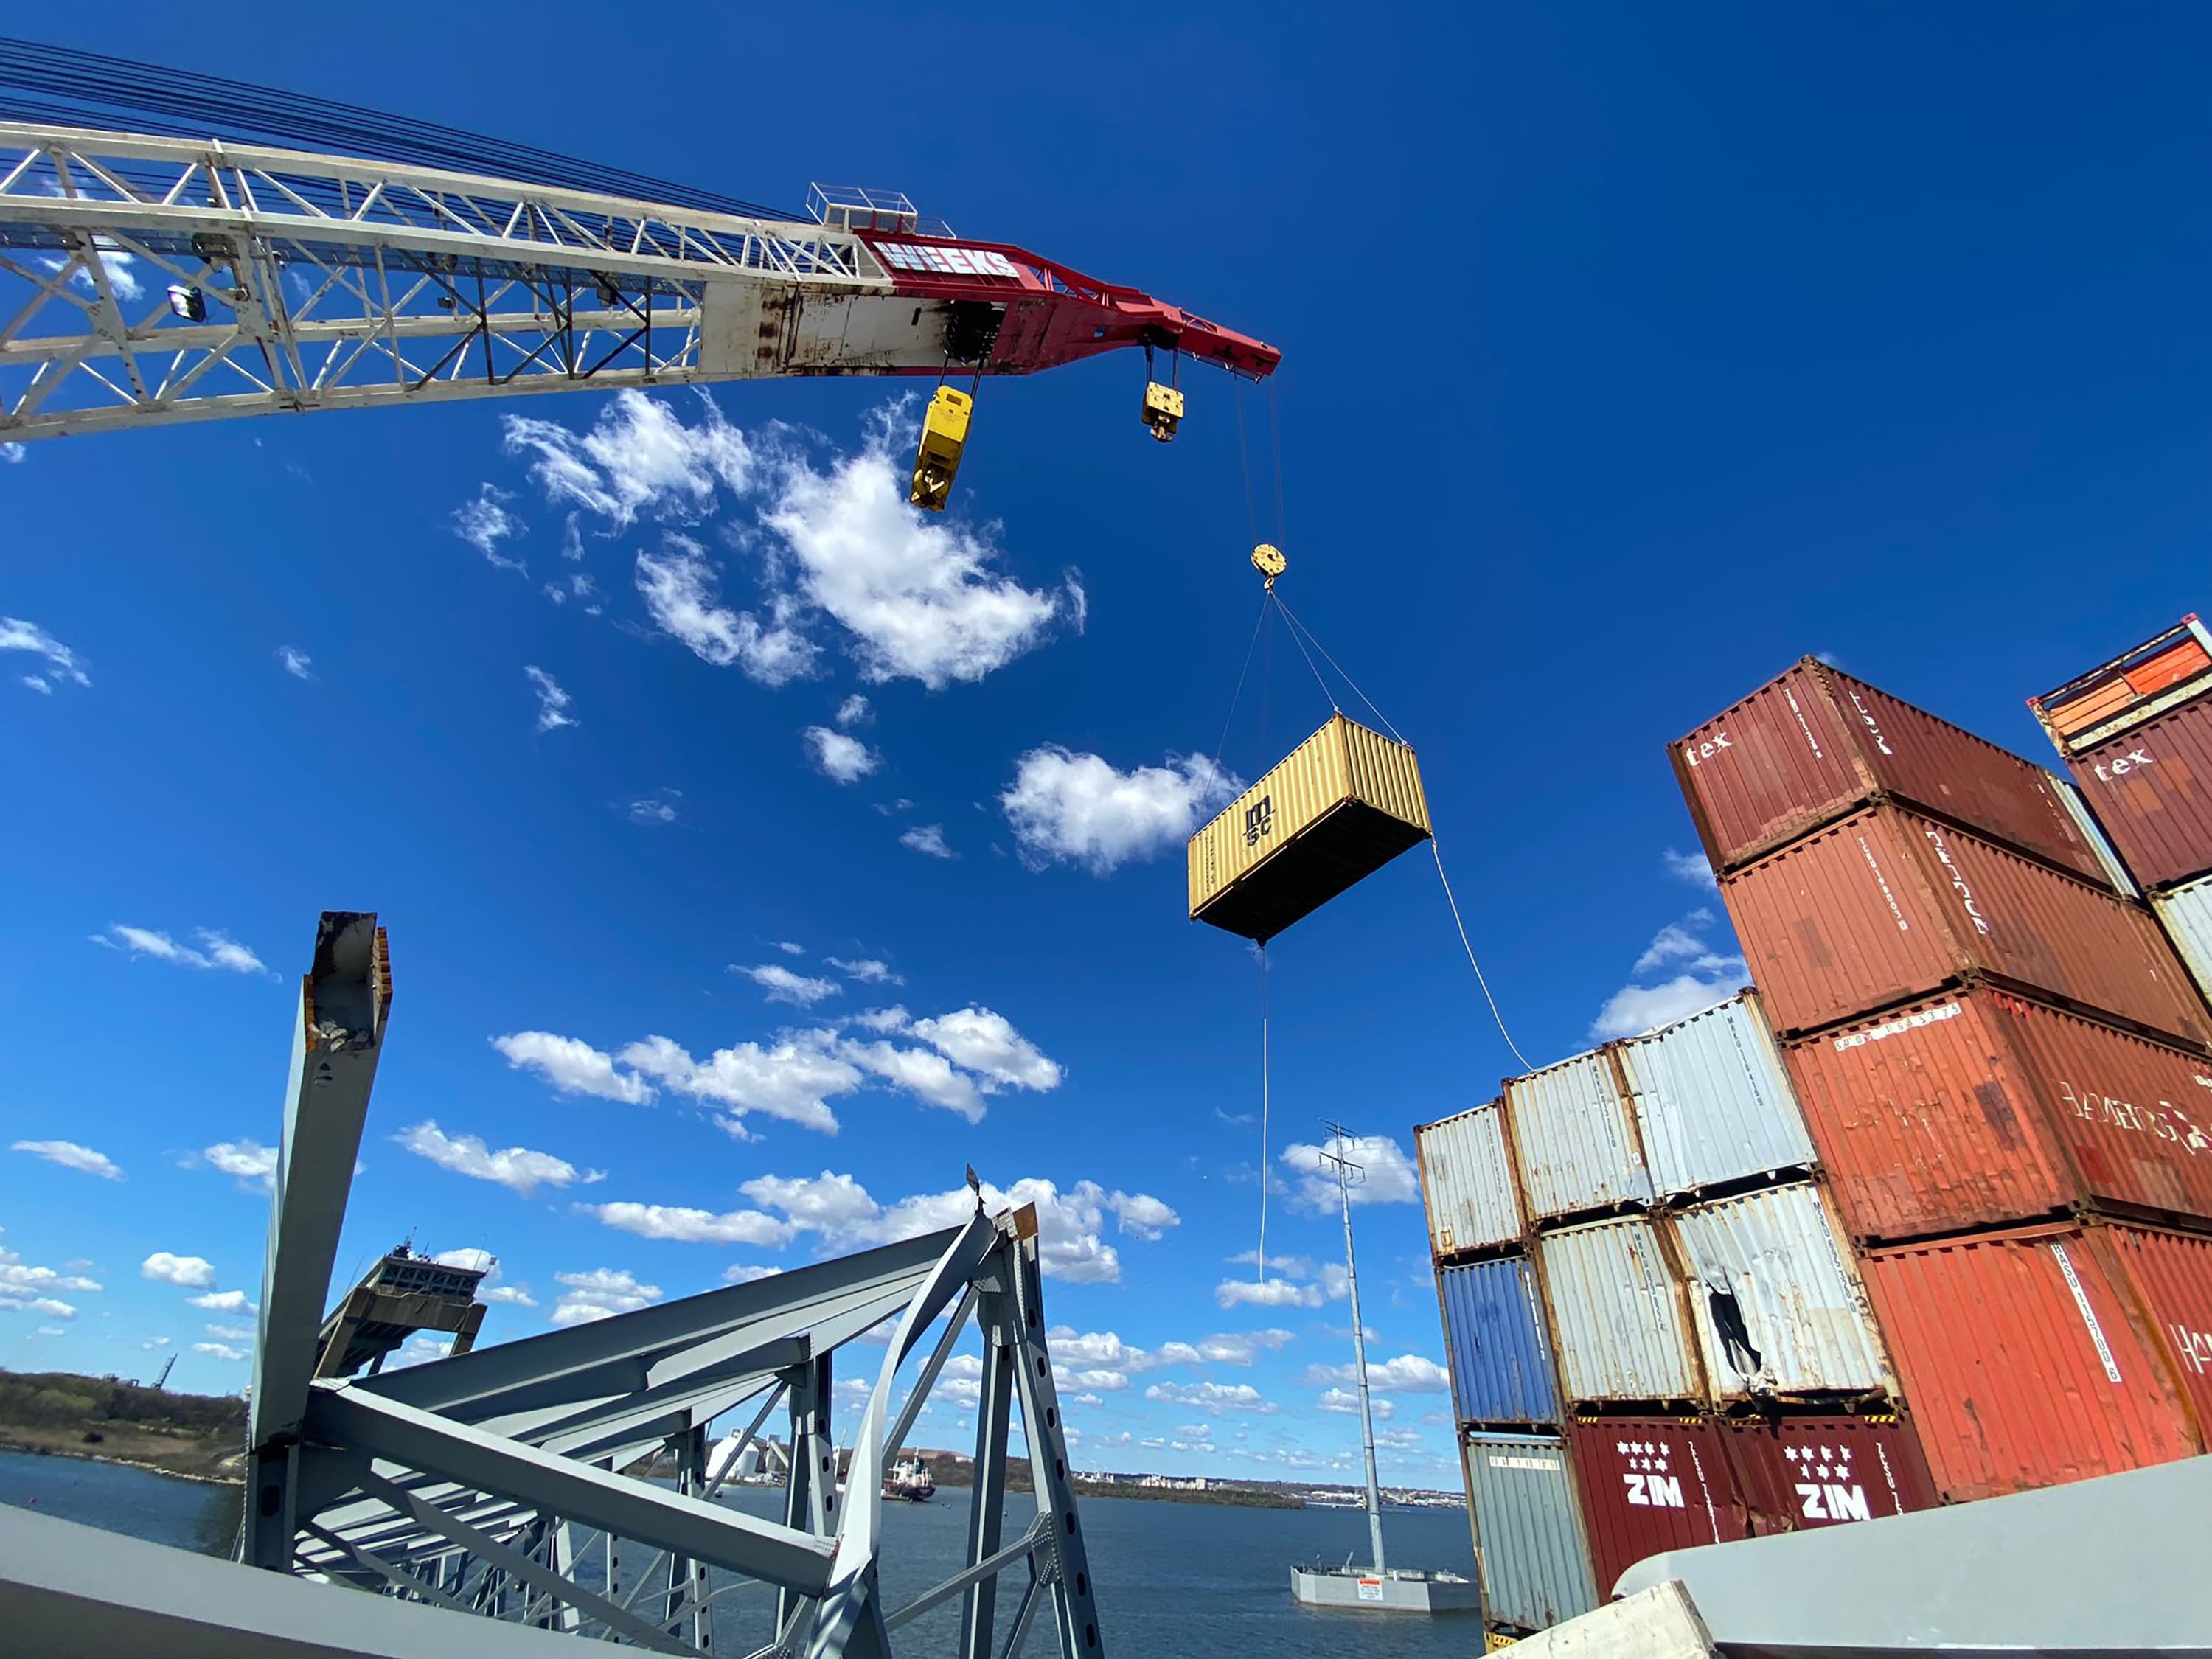 Pasarán semanas antes de que se retire el contenedor de recuento y el puerto de Baltimore esté listo para reabrir.